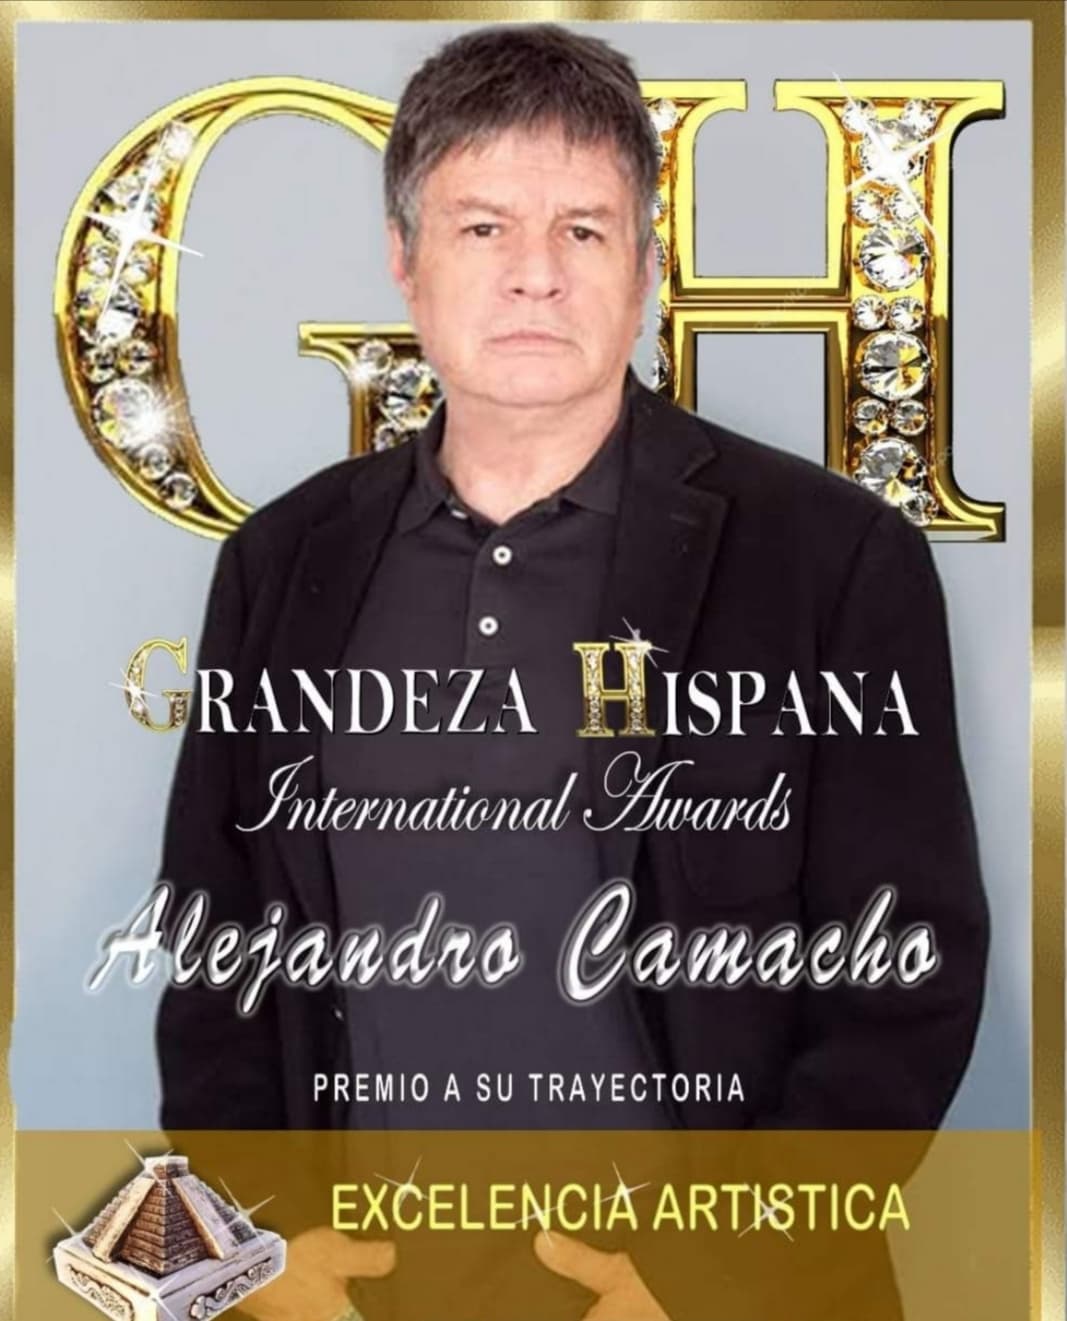 El lunes 21 de junio se realizará la 3ª. Edición de los Premios Grandeza Hispana International Awards